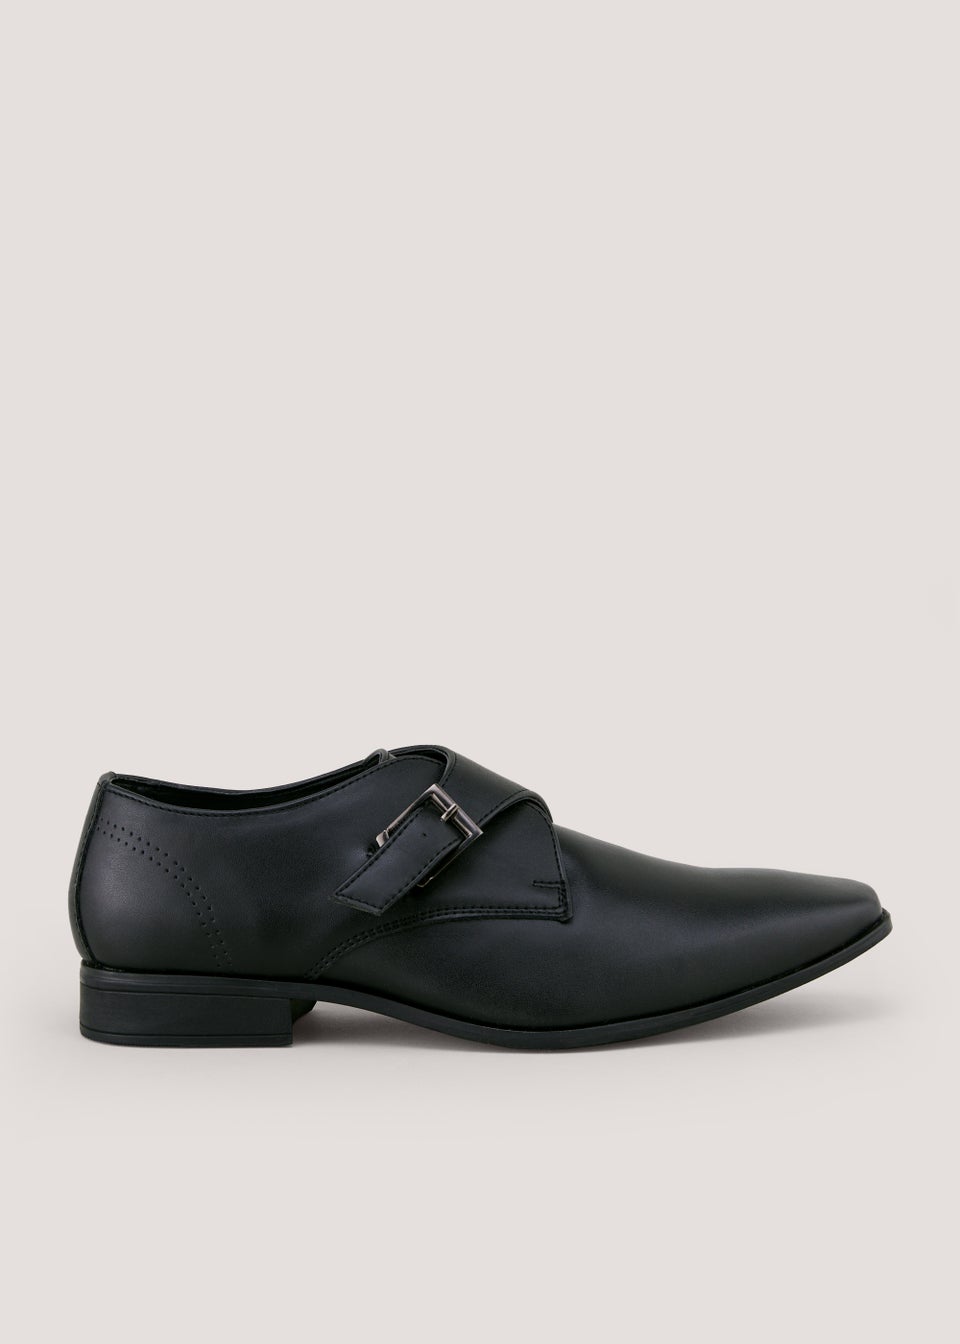 Black Formal Monk Shoes - Matalan